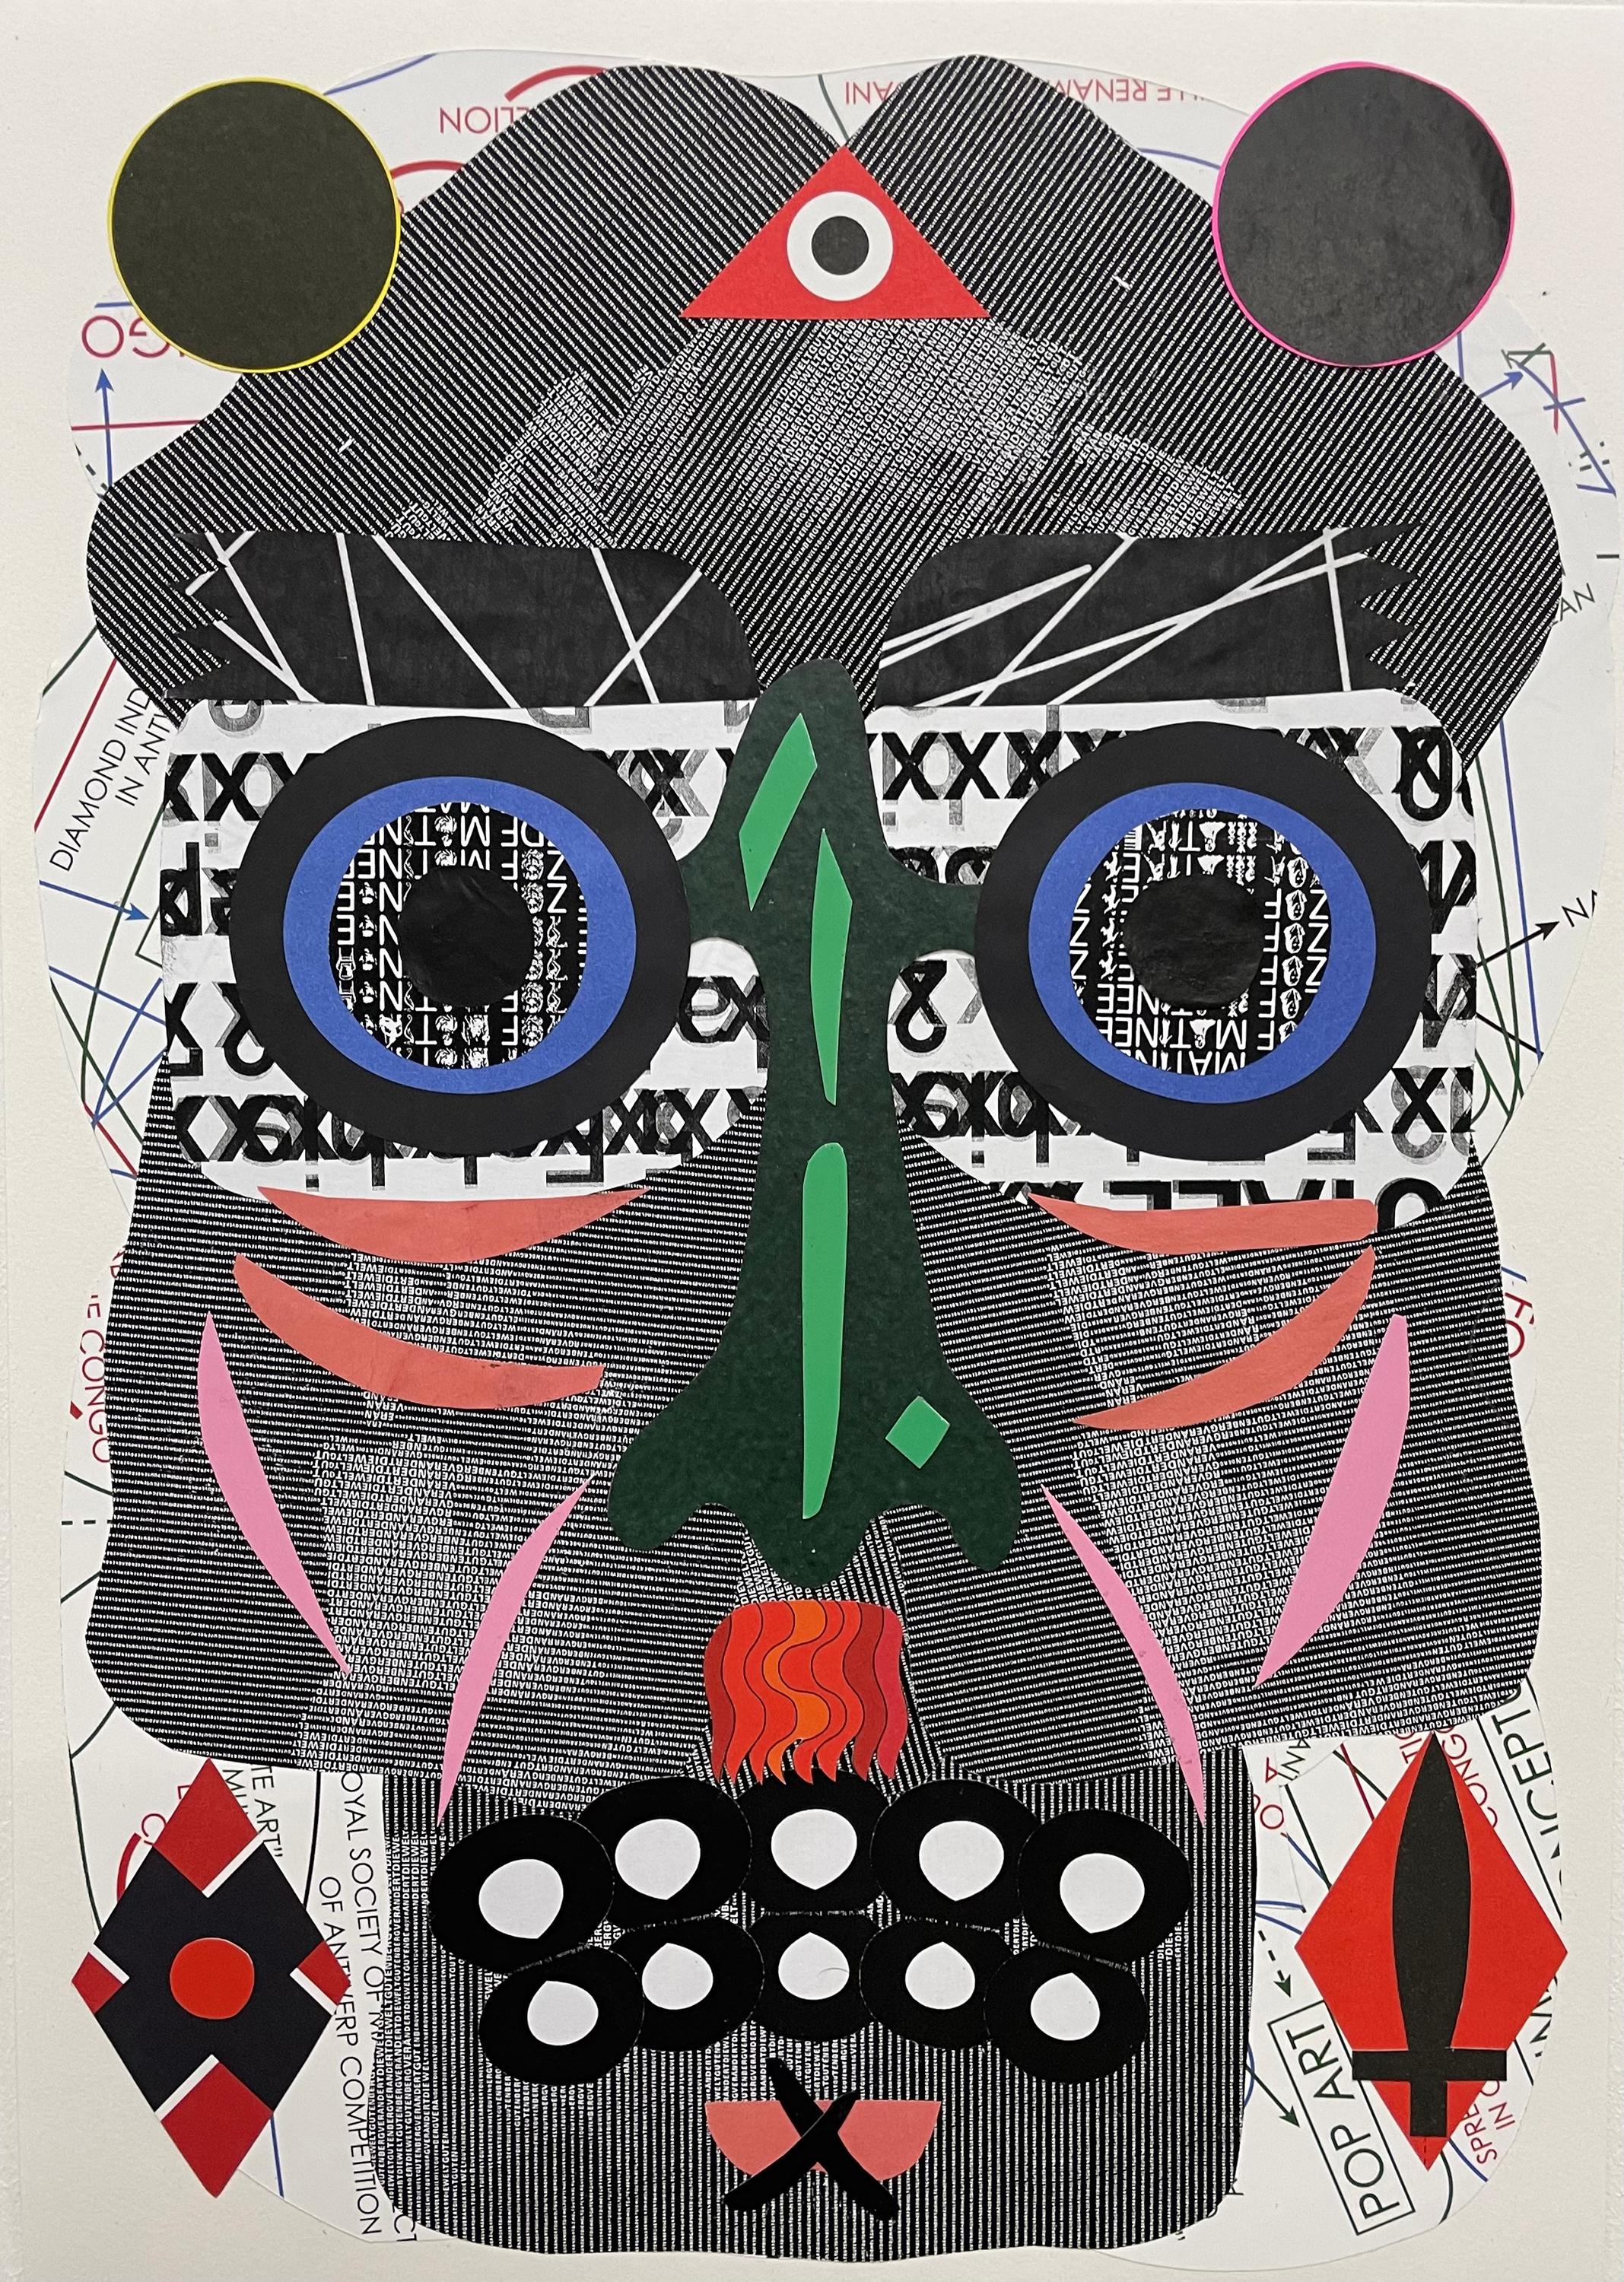 Nicolas" - Collage, abstraktes Porträt, gefundenes Papier, schwarz-weiß, Surrealismus – Mixed Media Art von Esteban Patino